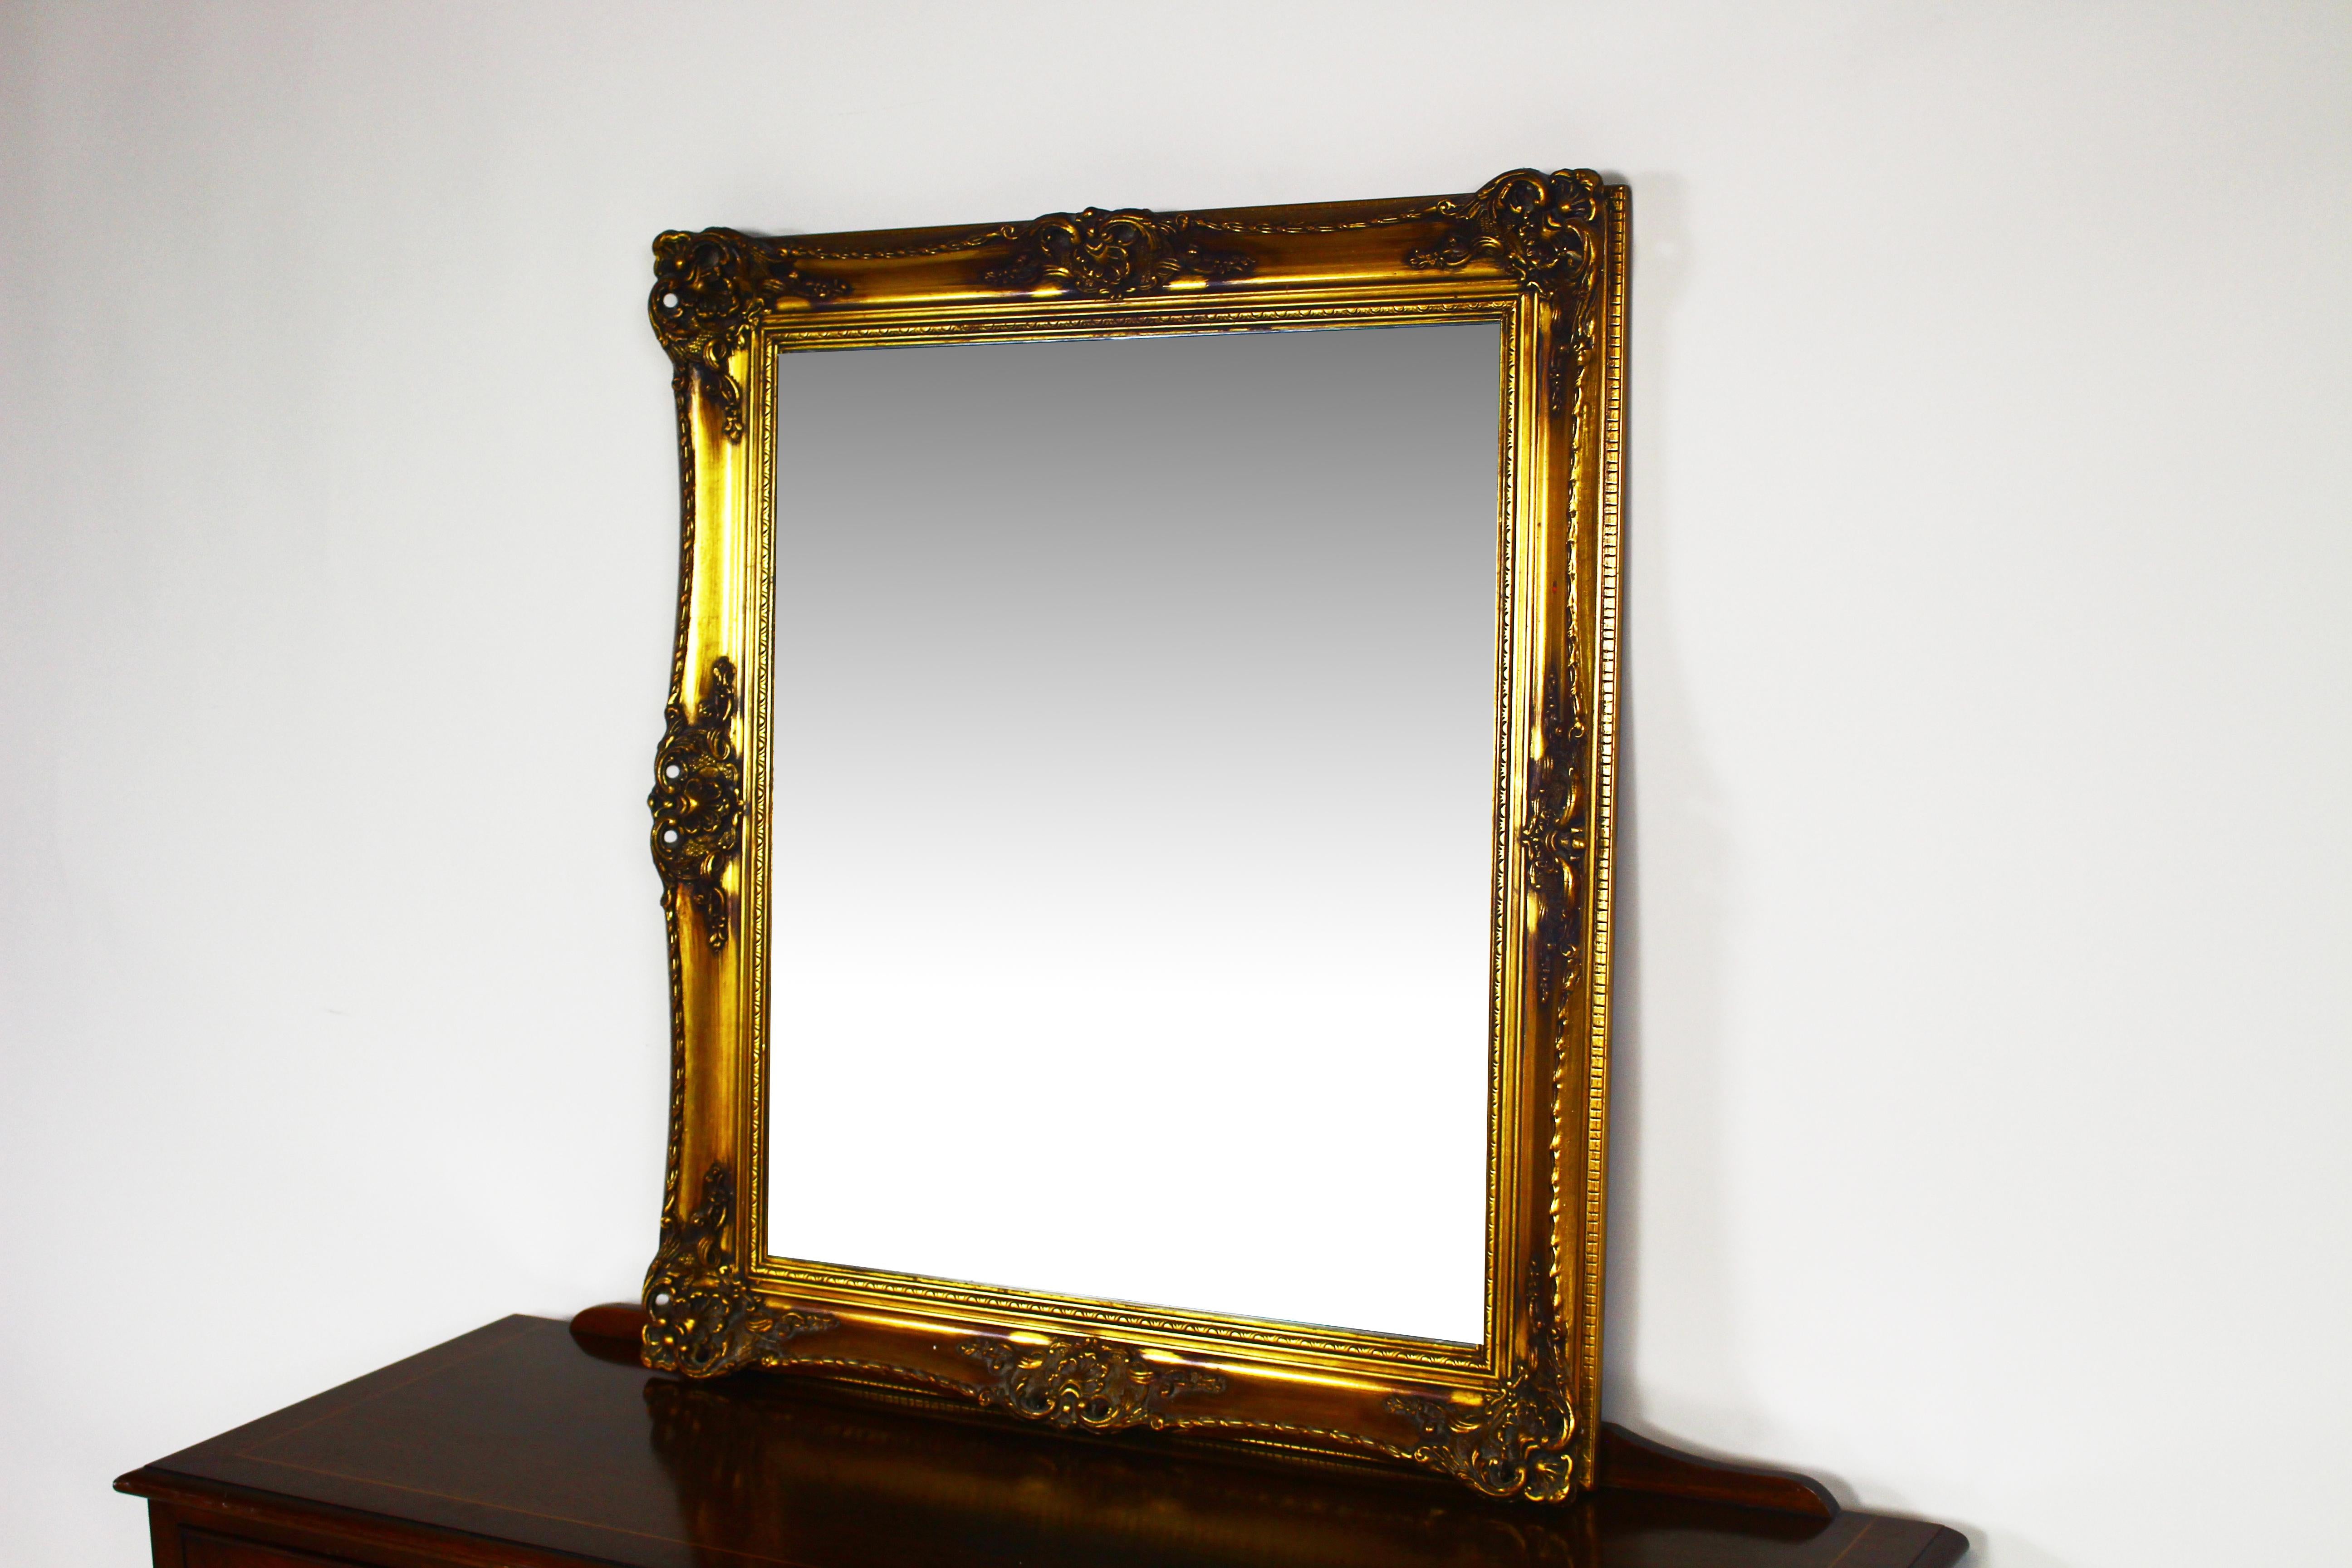 Superbe miroir ancien avec cadre doré.
Miroir avec cadre sculpté.
Bon état, prêt à l'emploi.